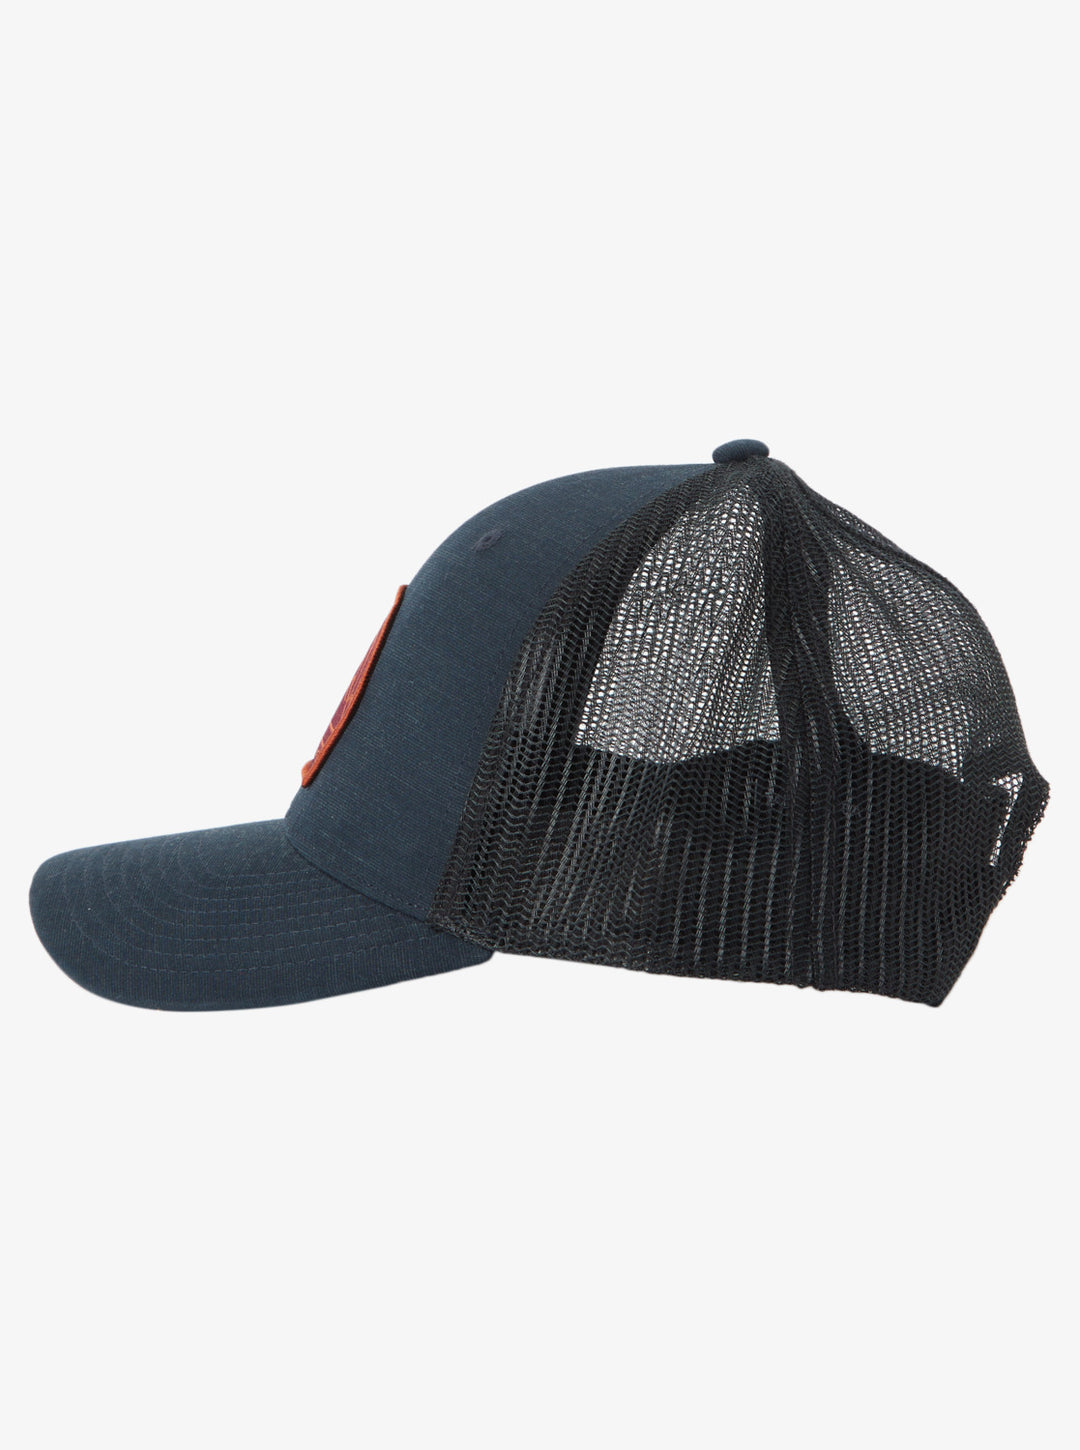 Quiksilver Loose Bait Diego Sun - Boardshop – Trucker Hat Black